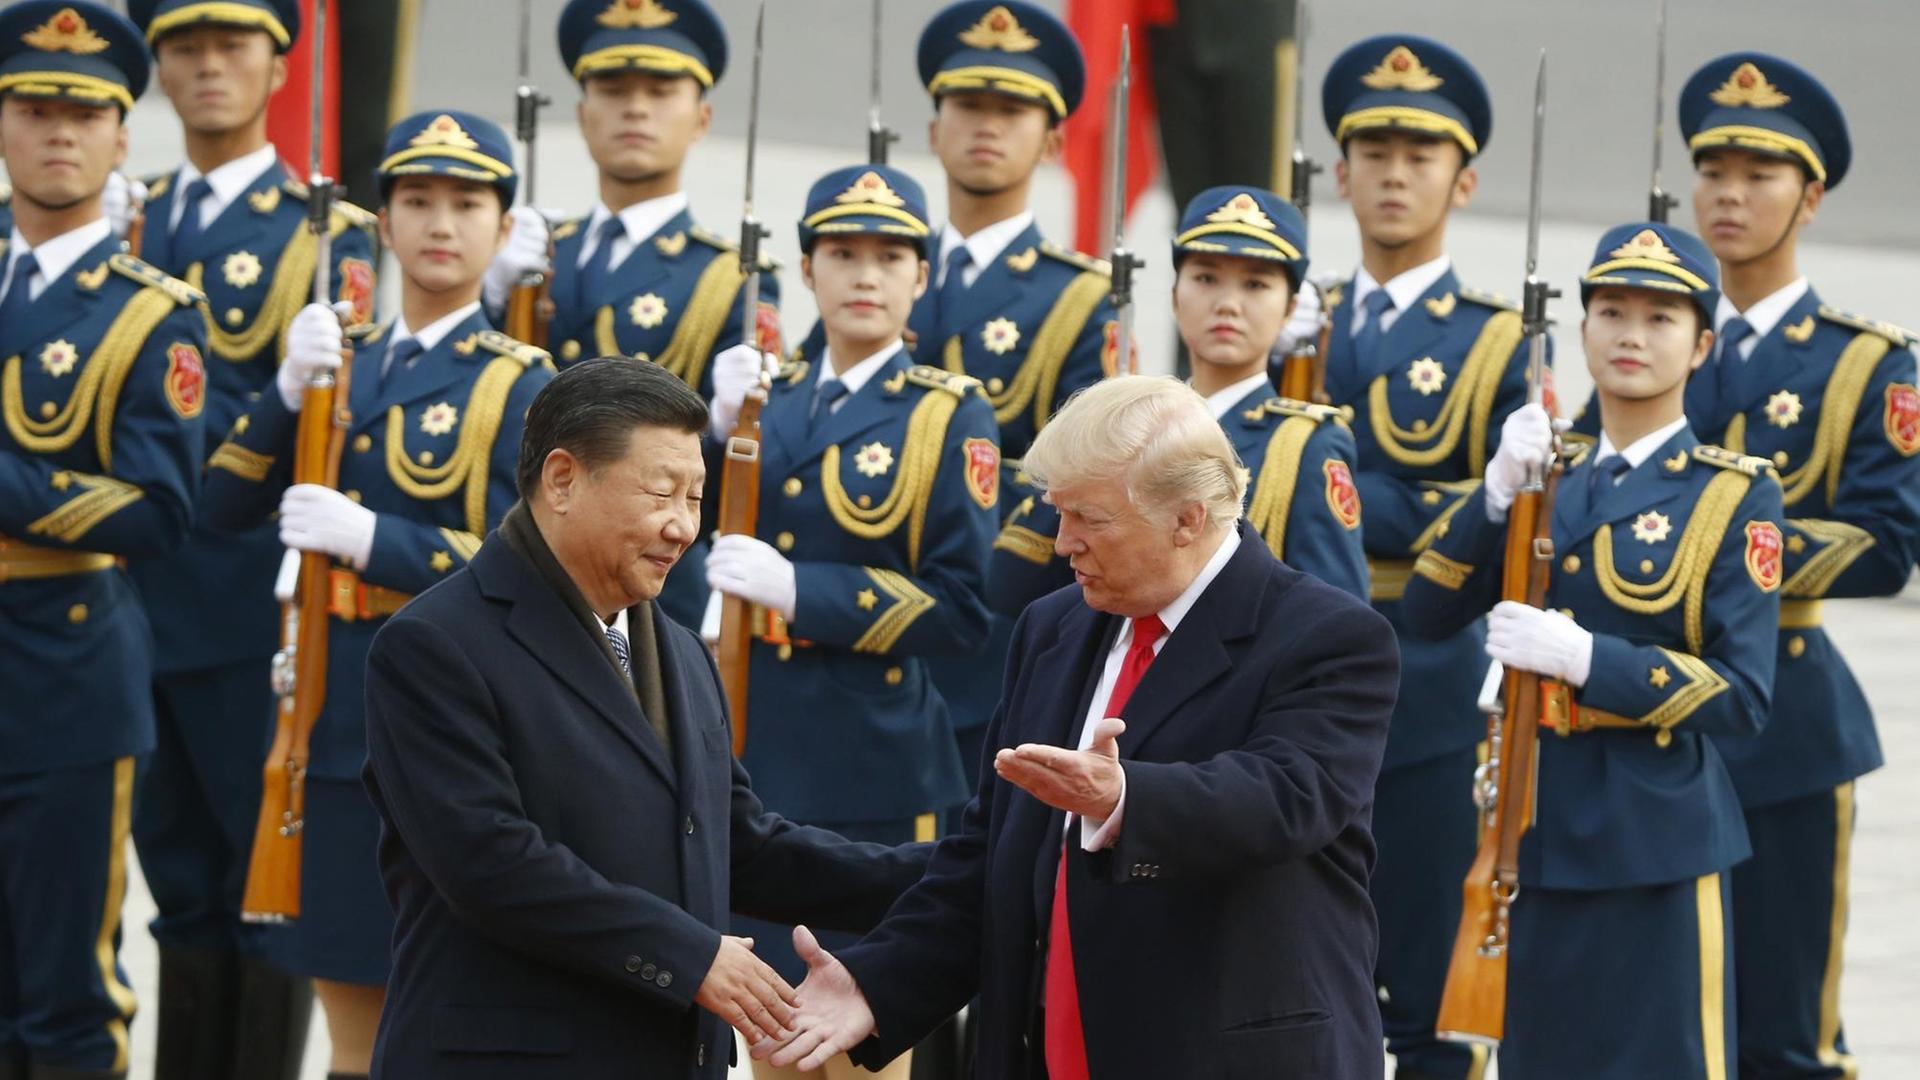 Xi Jinping begrüßt Donald Trump während einer Zeremonie in Peking 2017, im Hintergrund stehen Soldaten Spalier.